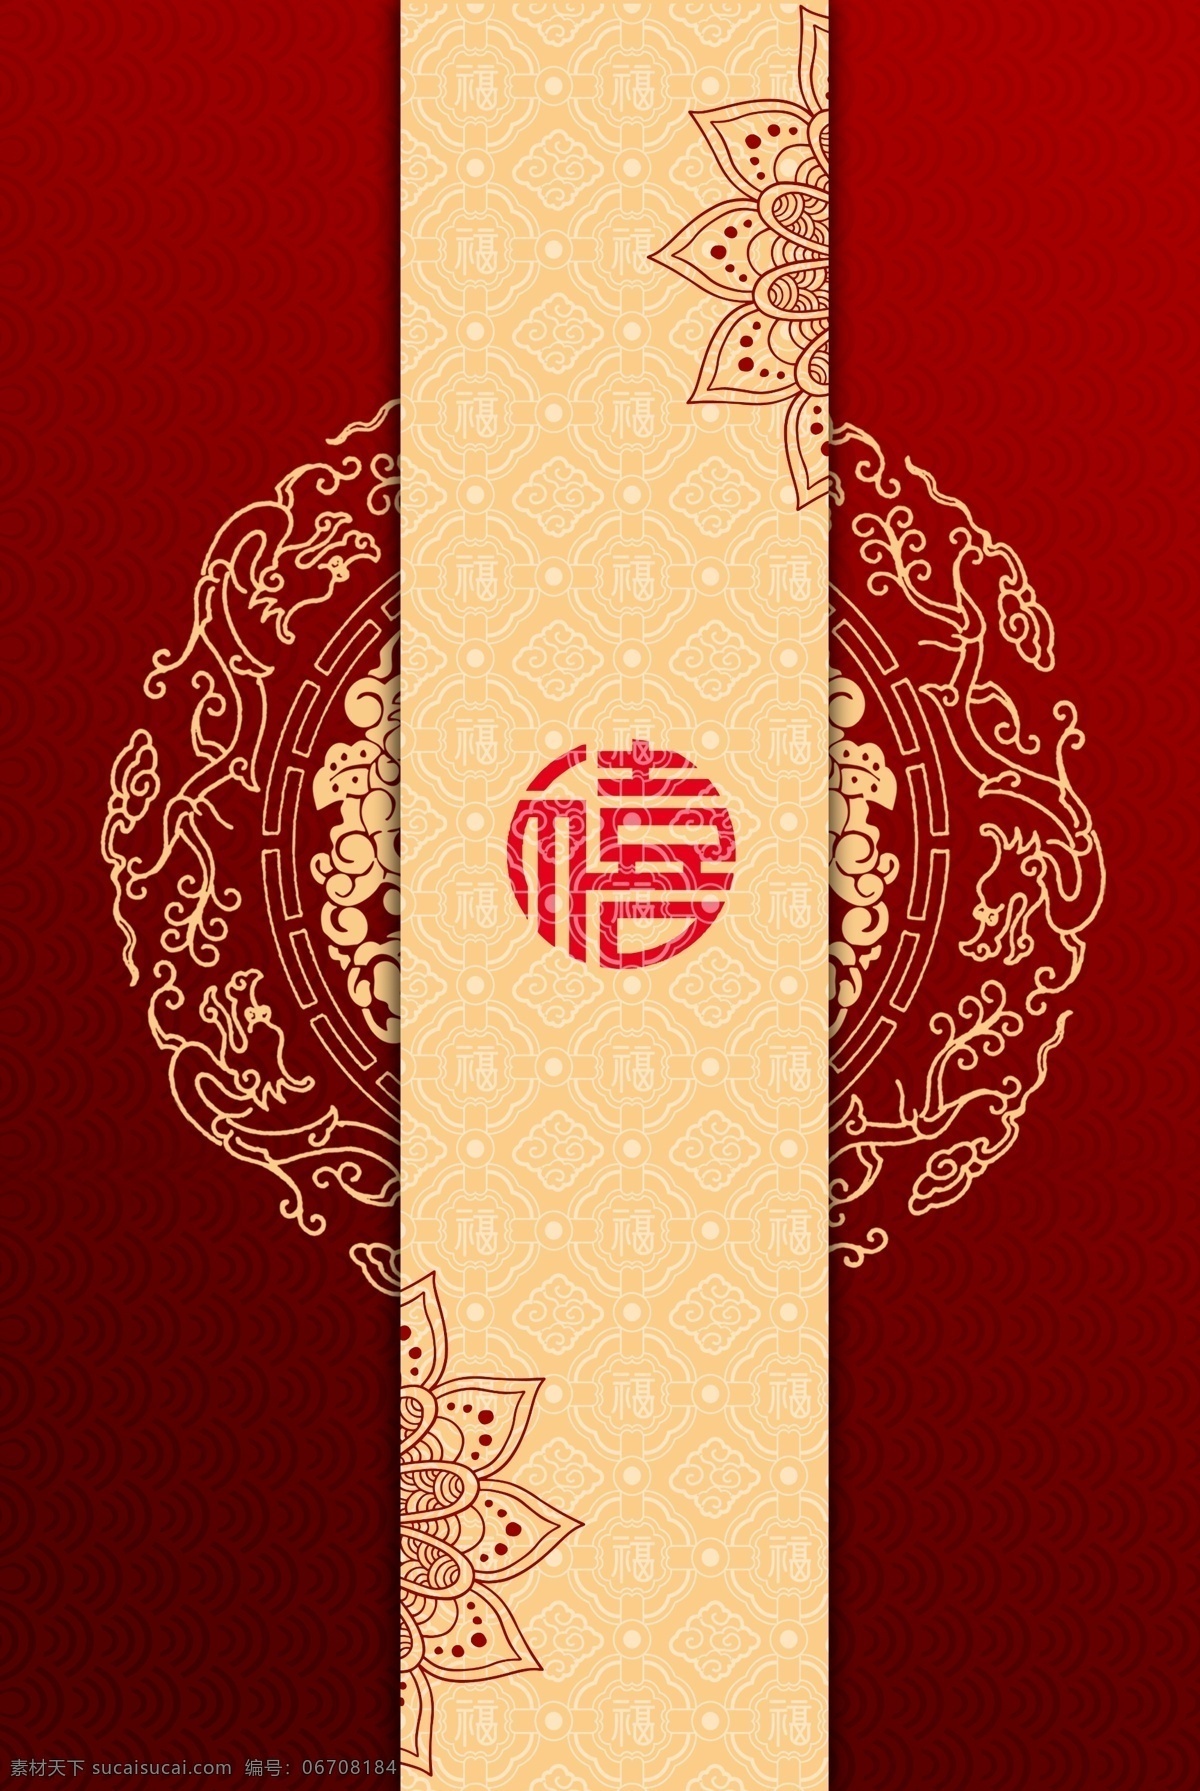 中式背景墙 中式背景素材 背景墙 背景墙素材 海报背景素材 中国风背景墙 分层